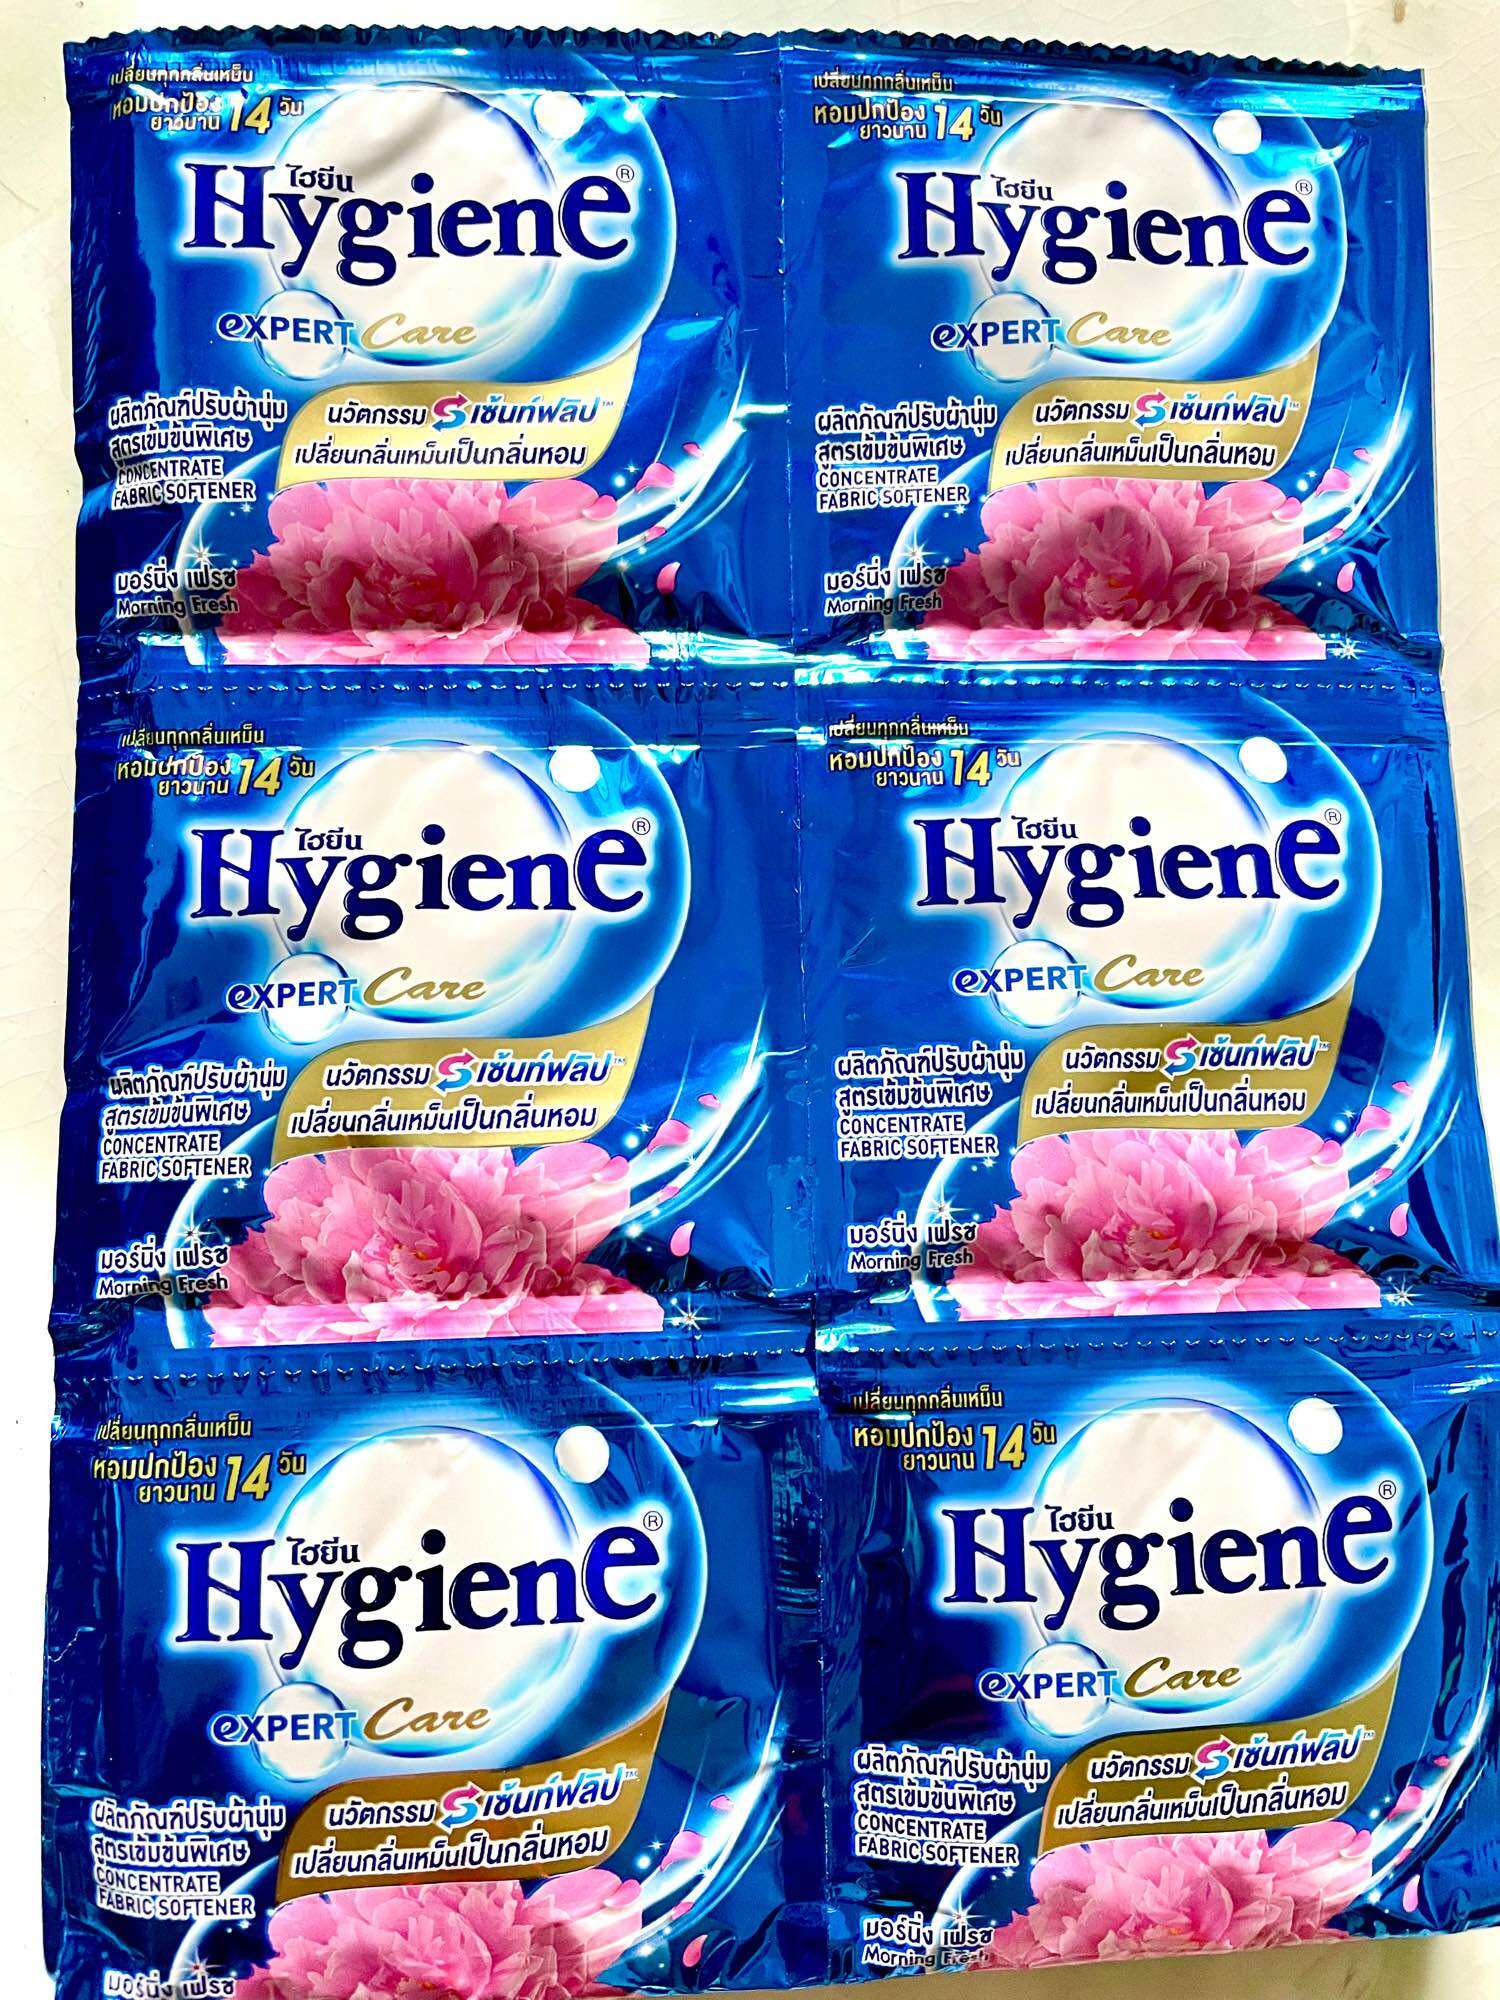 Combo 2 Dây.(Xanh-Đỏ) Dây 12 Gói-Gói 20ml Xả vải Hygiene sản xuất theo công nghệ Thái Lan siêu thơm- Nước xả Hygiene Thái Lan